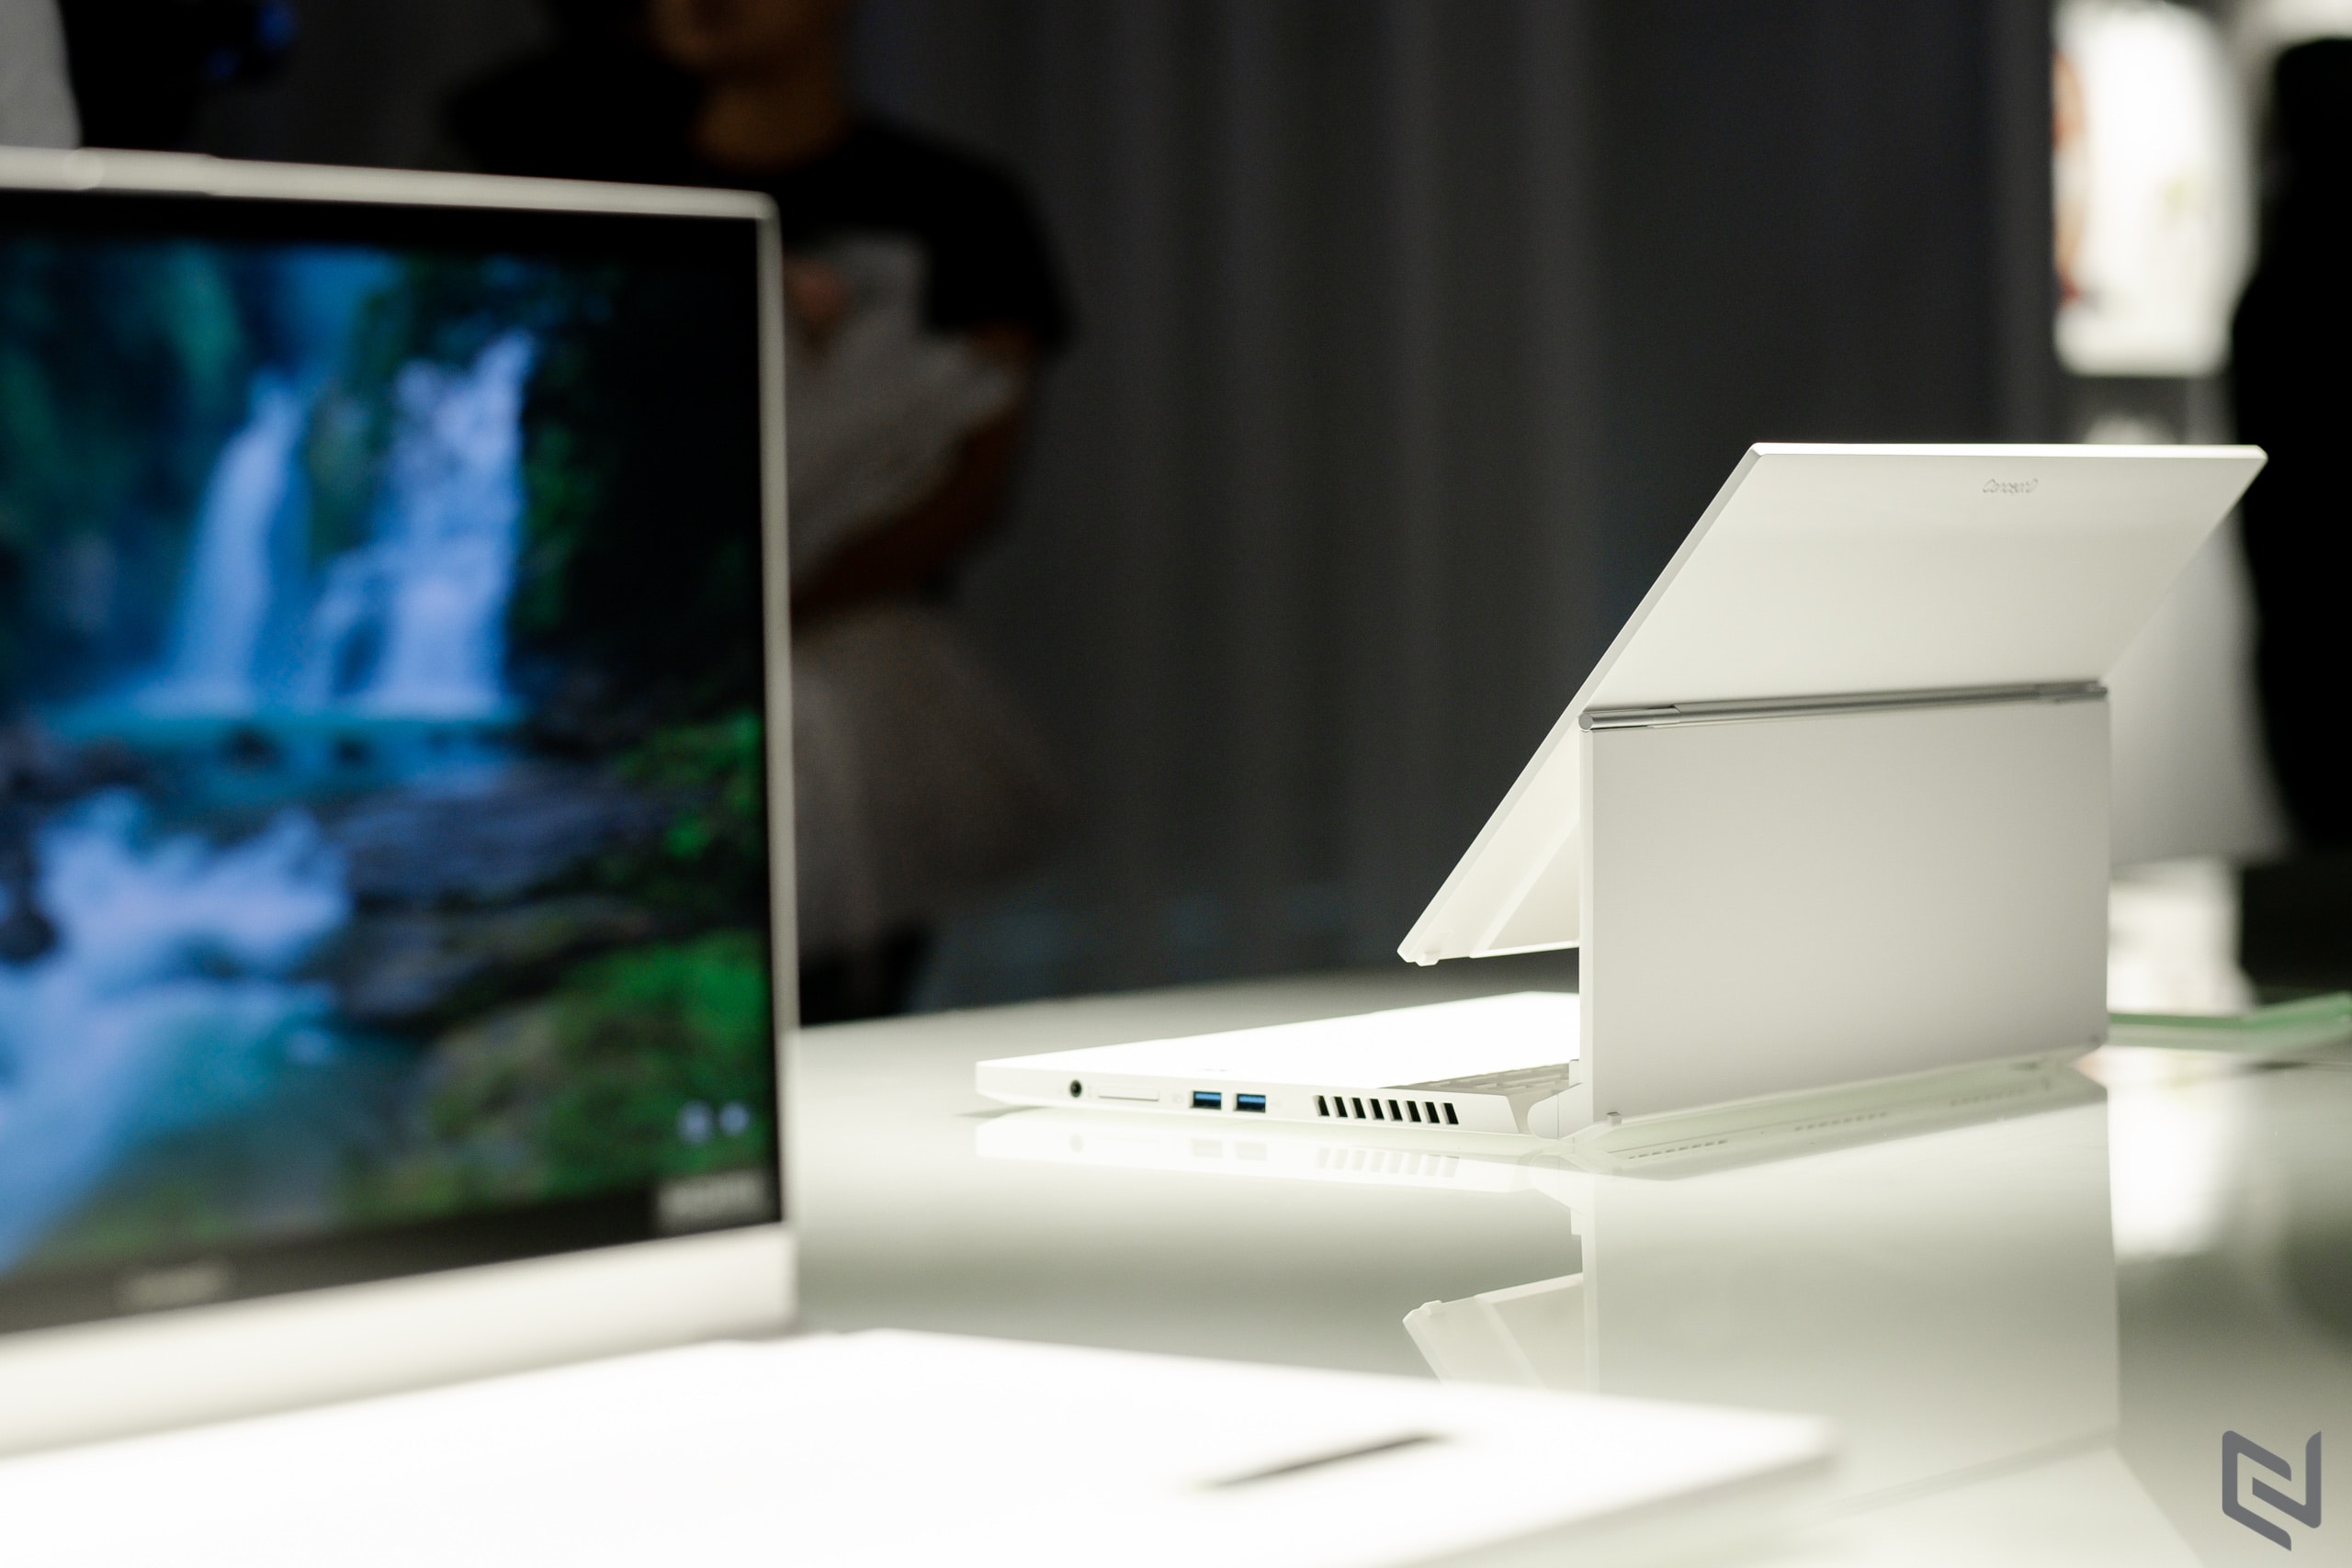 Acer ra mắt dòng sản phẩm ConceptD dành cho các nhà sáng tạo trong khuôn khổ triển lãm nghệ thuật “Sáng tạo nguyên bản”